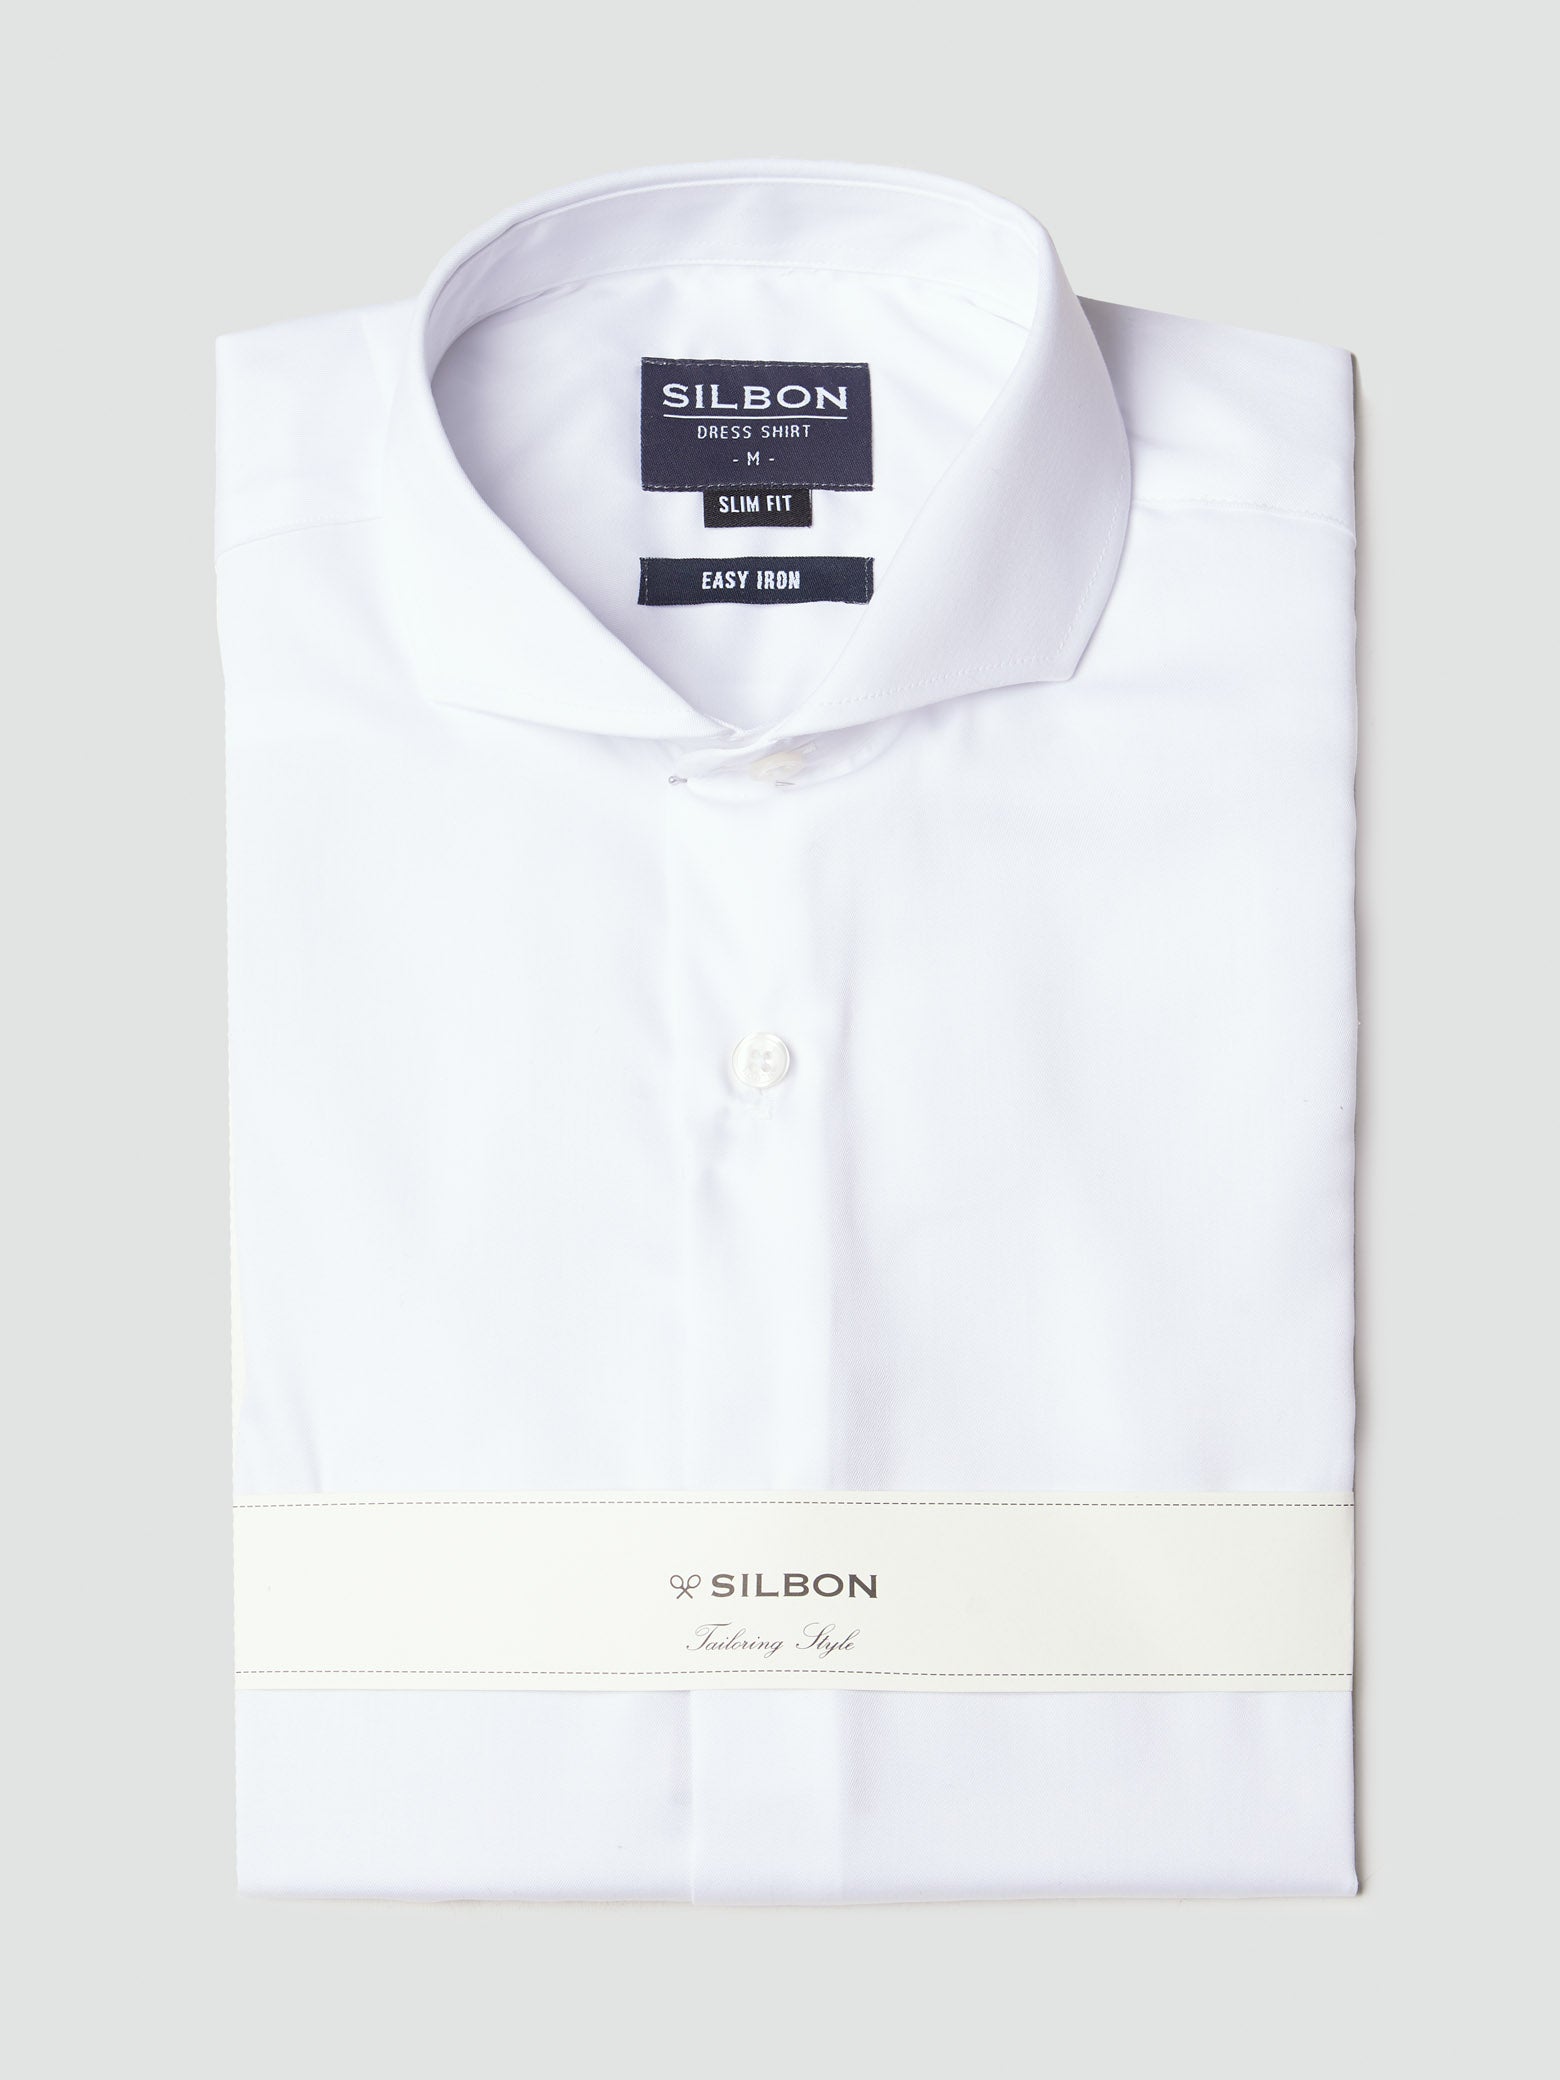 Camisa vestir blanca puño simple easy iron